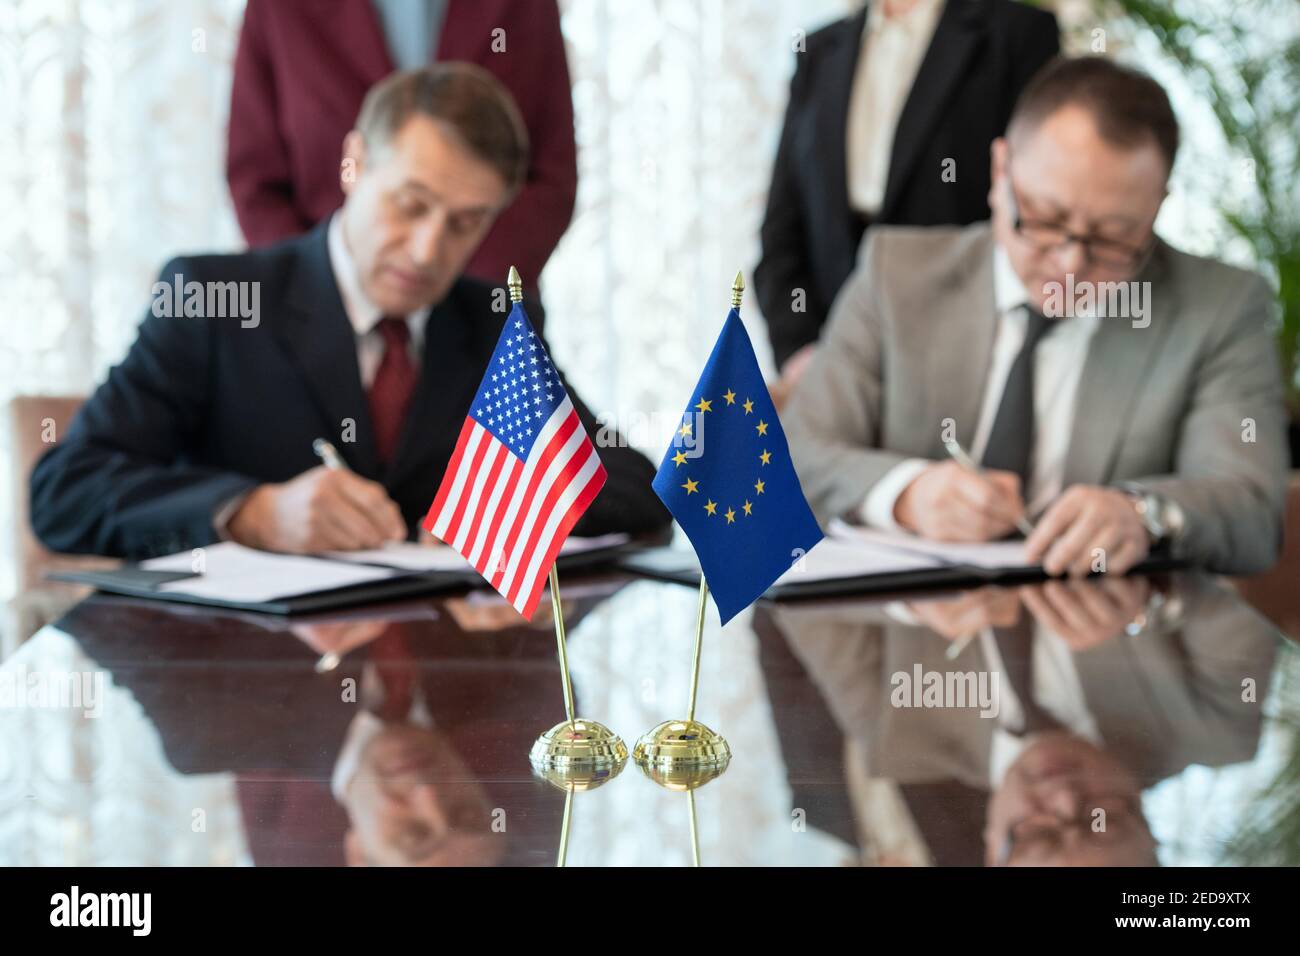 Drapeaux des États-Unis et de l'Union européenne sur la table contre deux délégués signent le contrat après la négociation et la conclusion de l'accord Banque D'Images